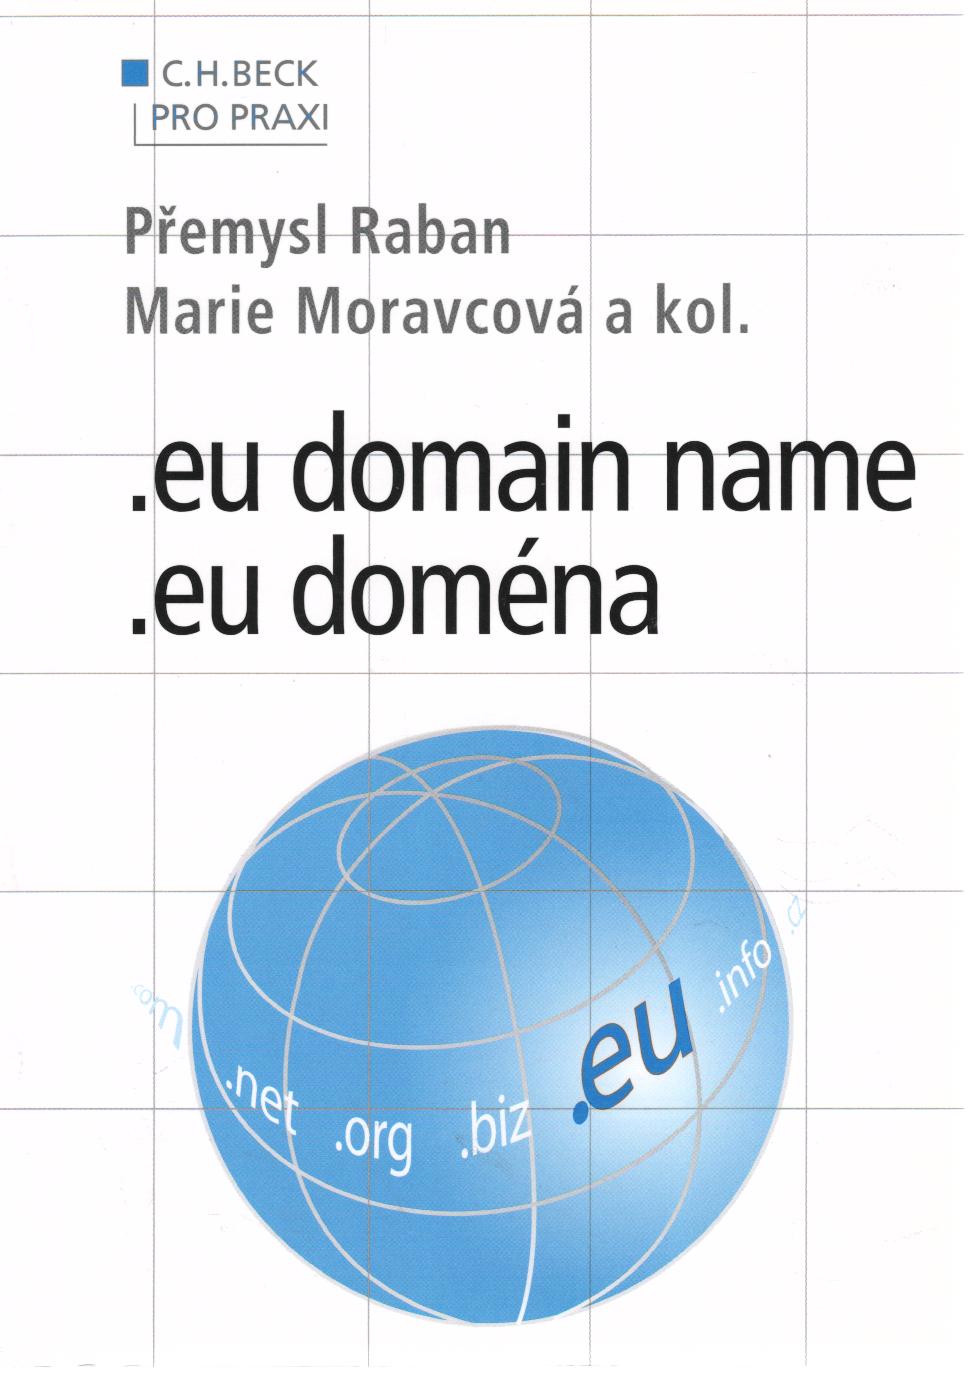 .eu domain name, .eu doména